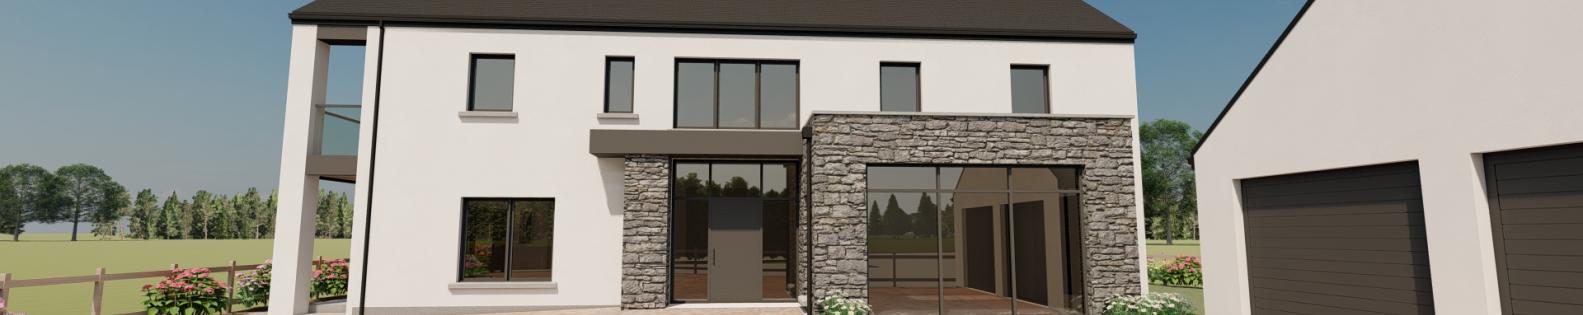 Dwelling & Garage design